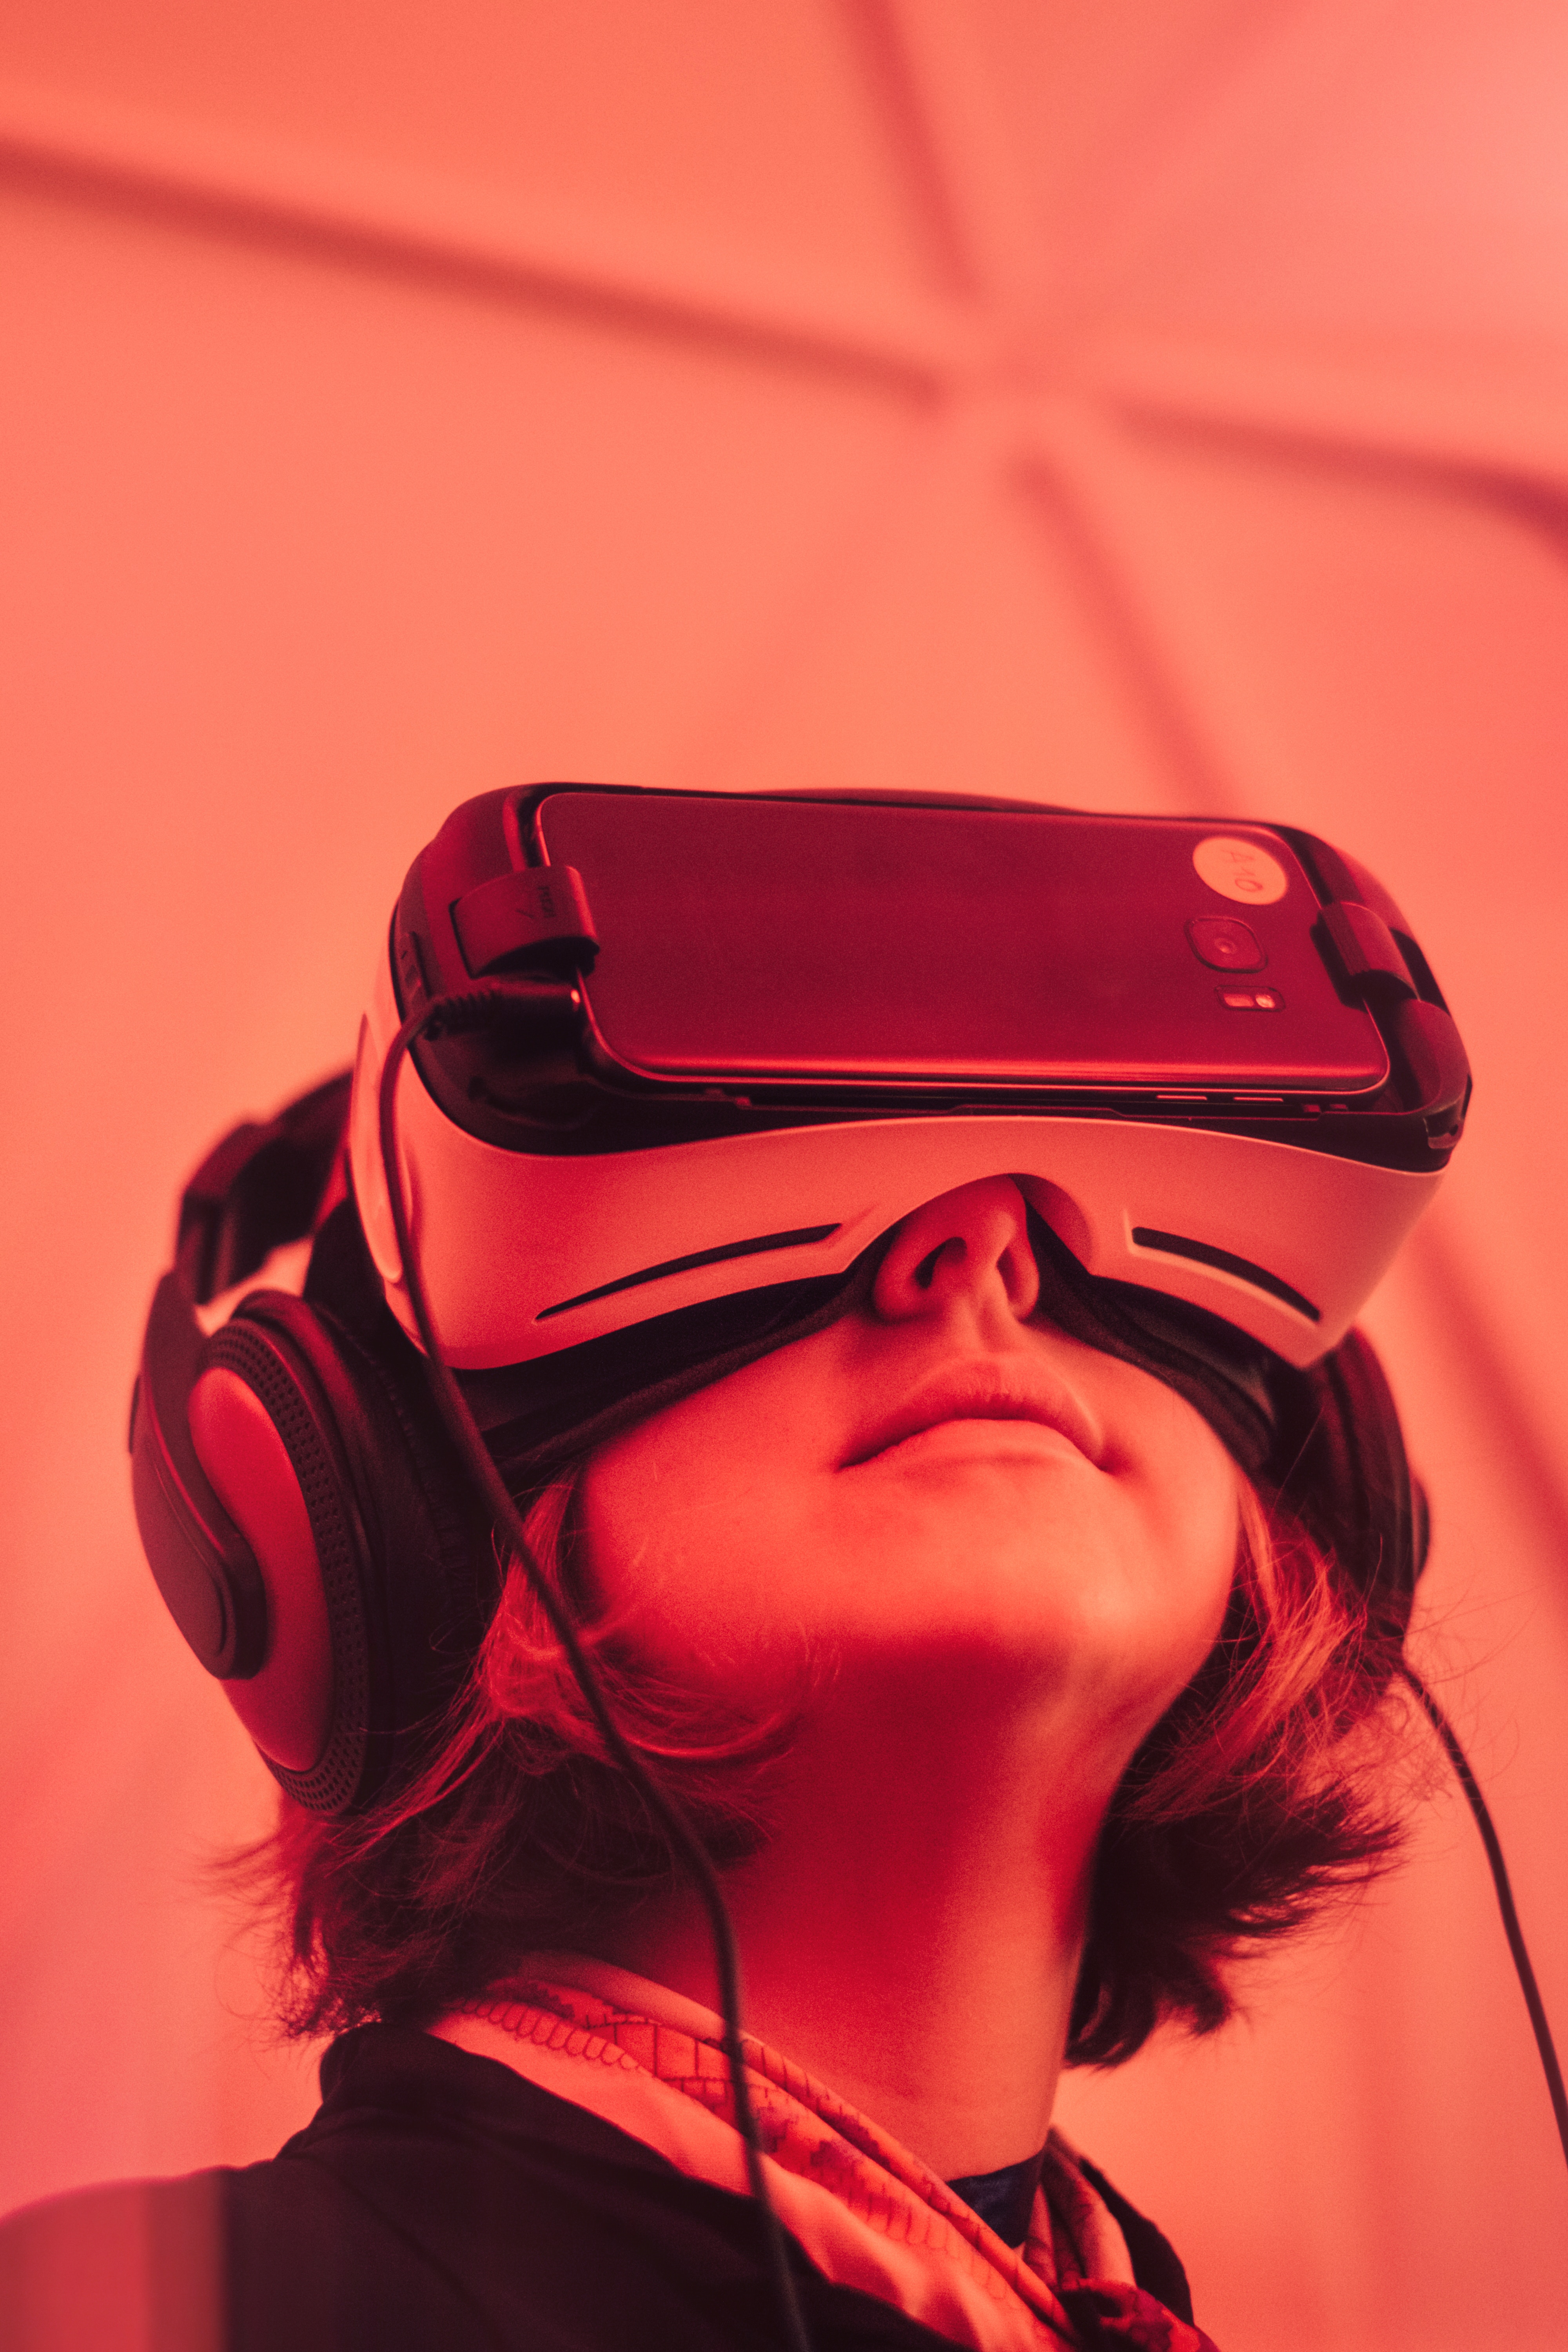 Wie hört man in einem VR System das Läuten?